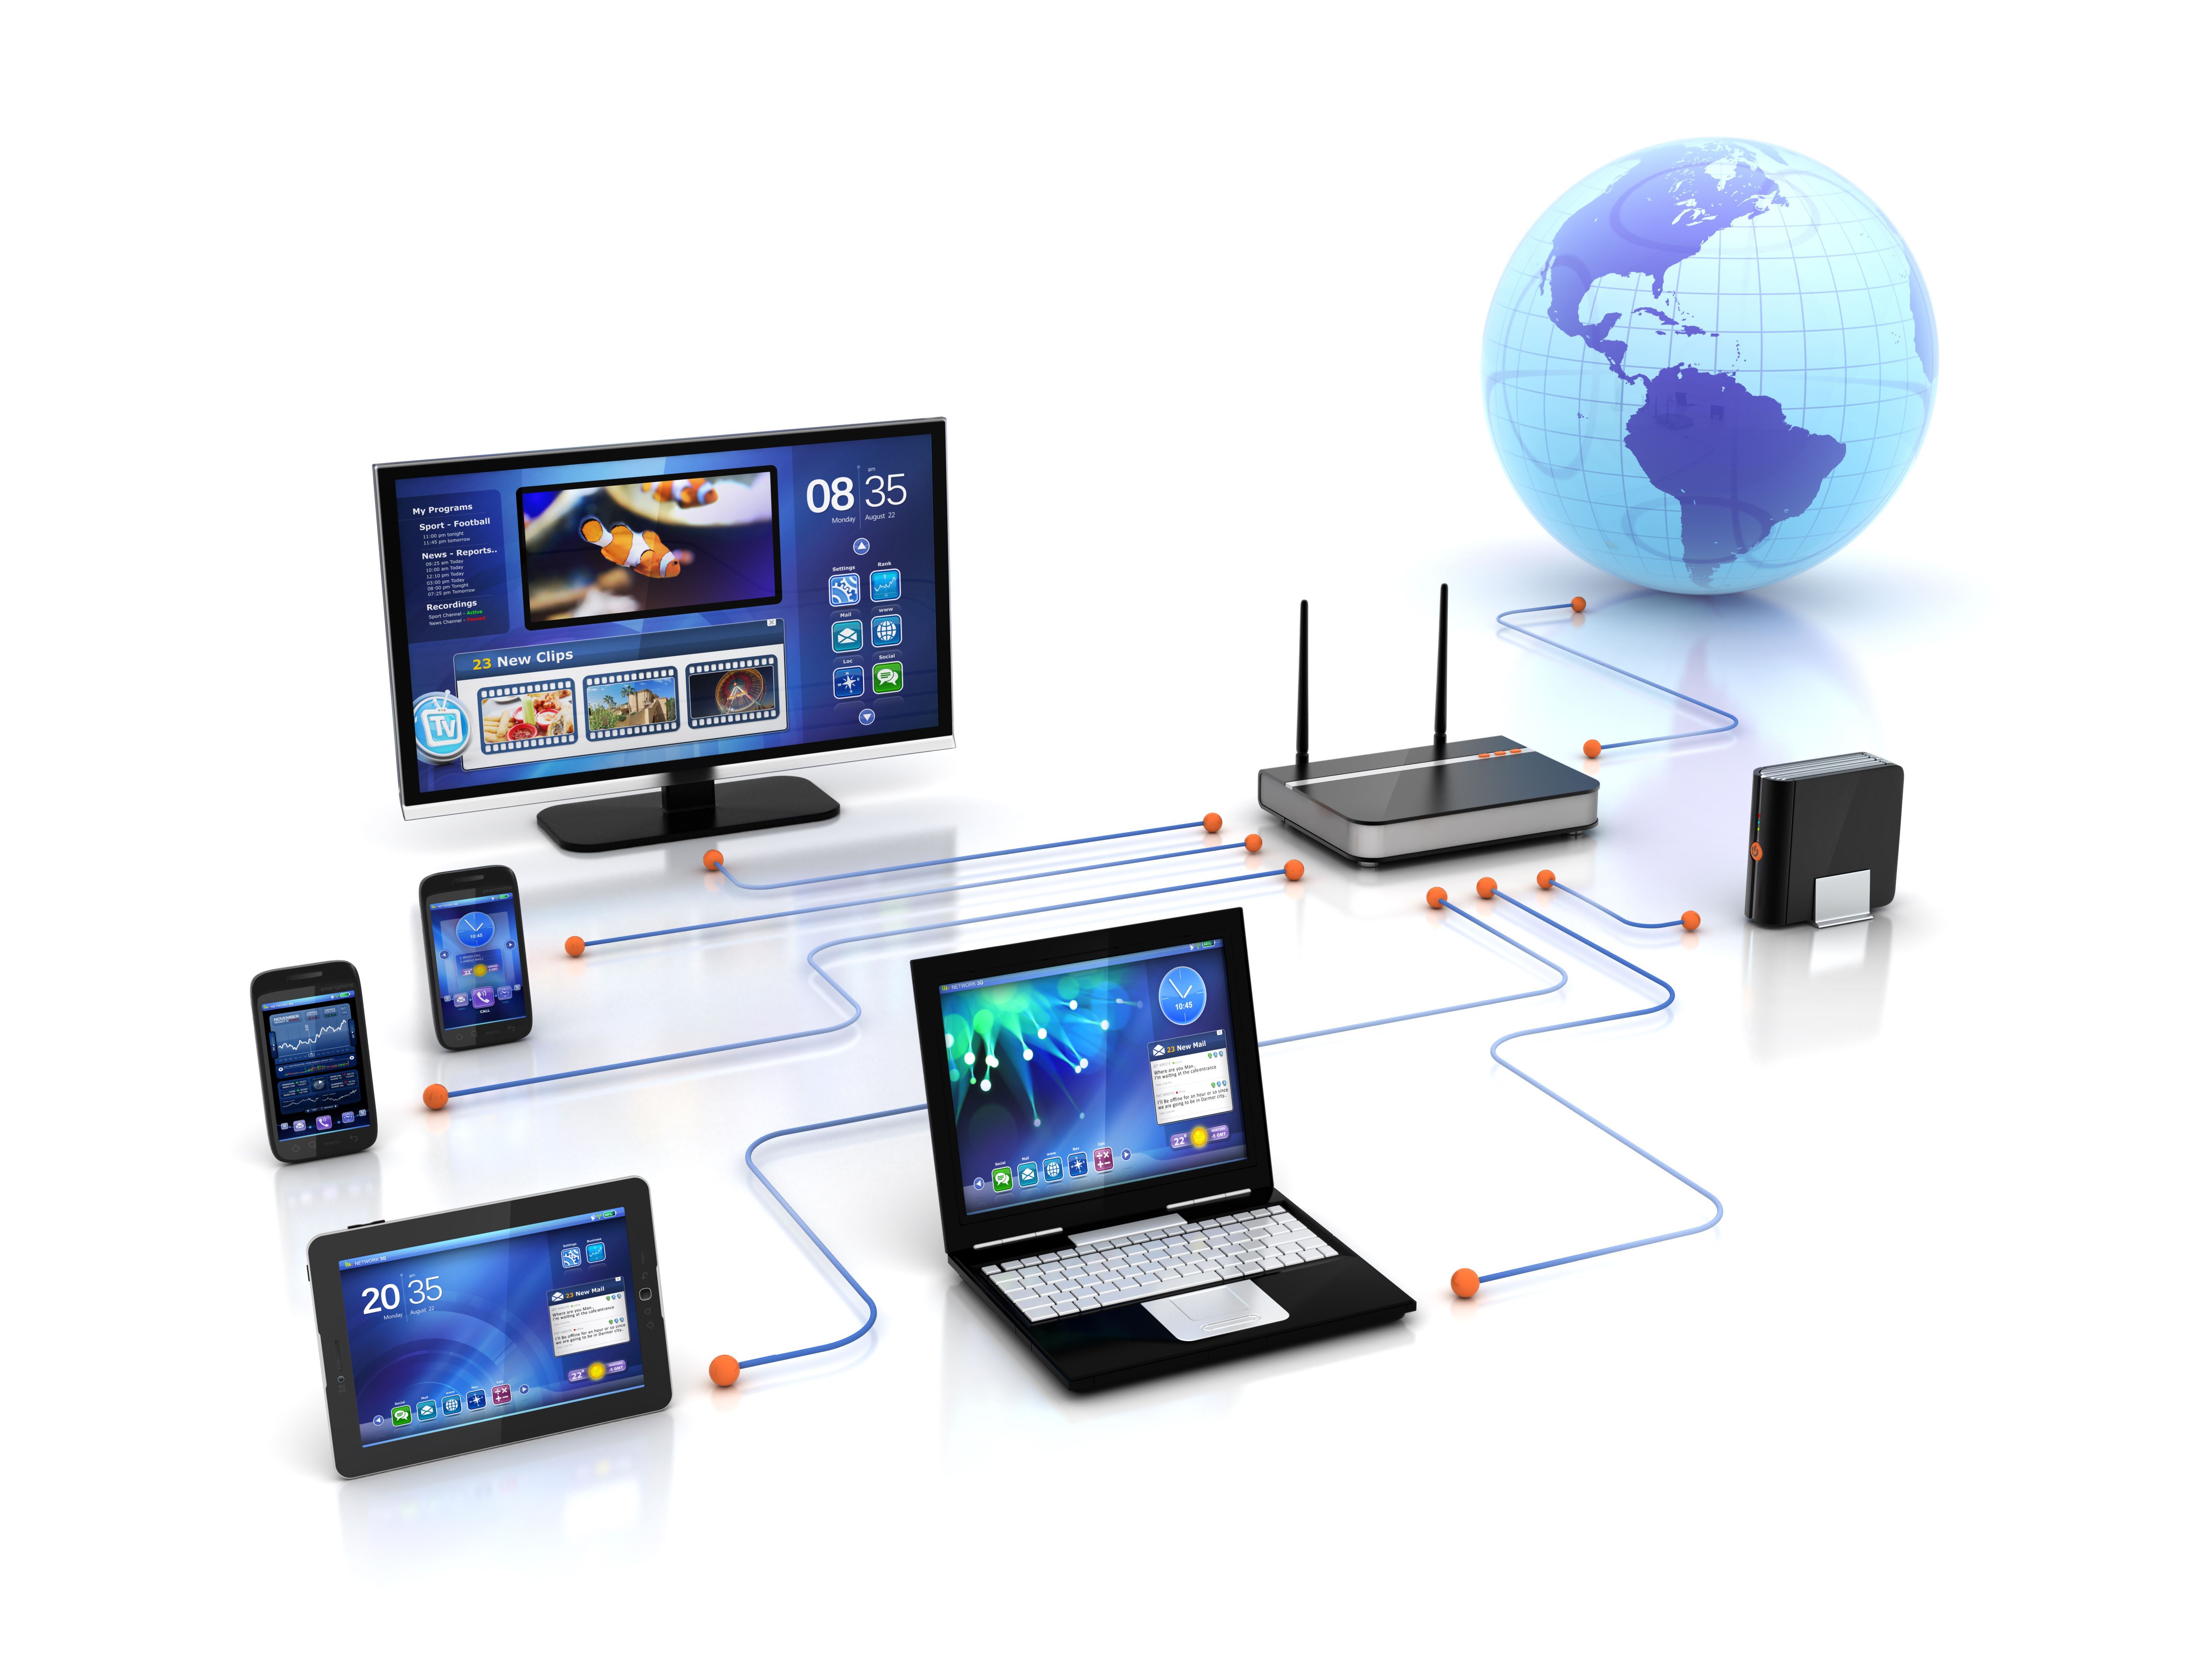 Снимок экрана: ноутбук, планшетный компьютер, настольный компьютер, беспроводной маршрутизатор и два телефона, подключенные к всемирной паутине.